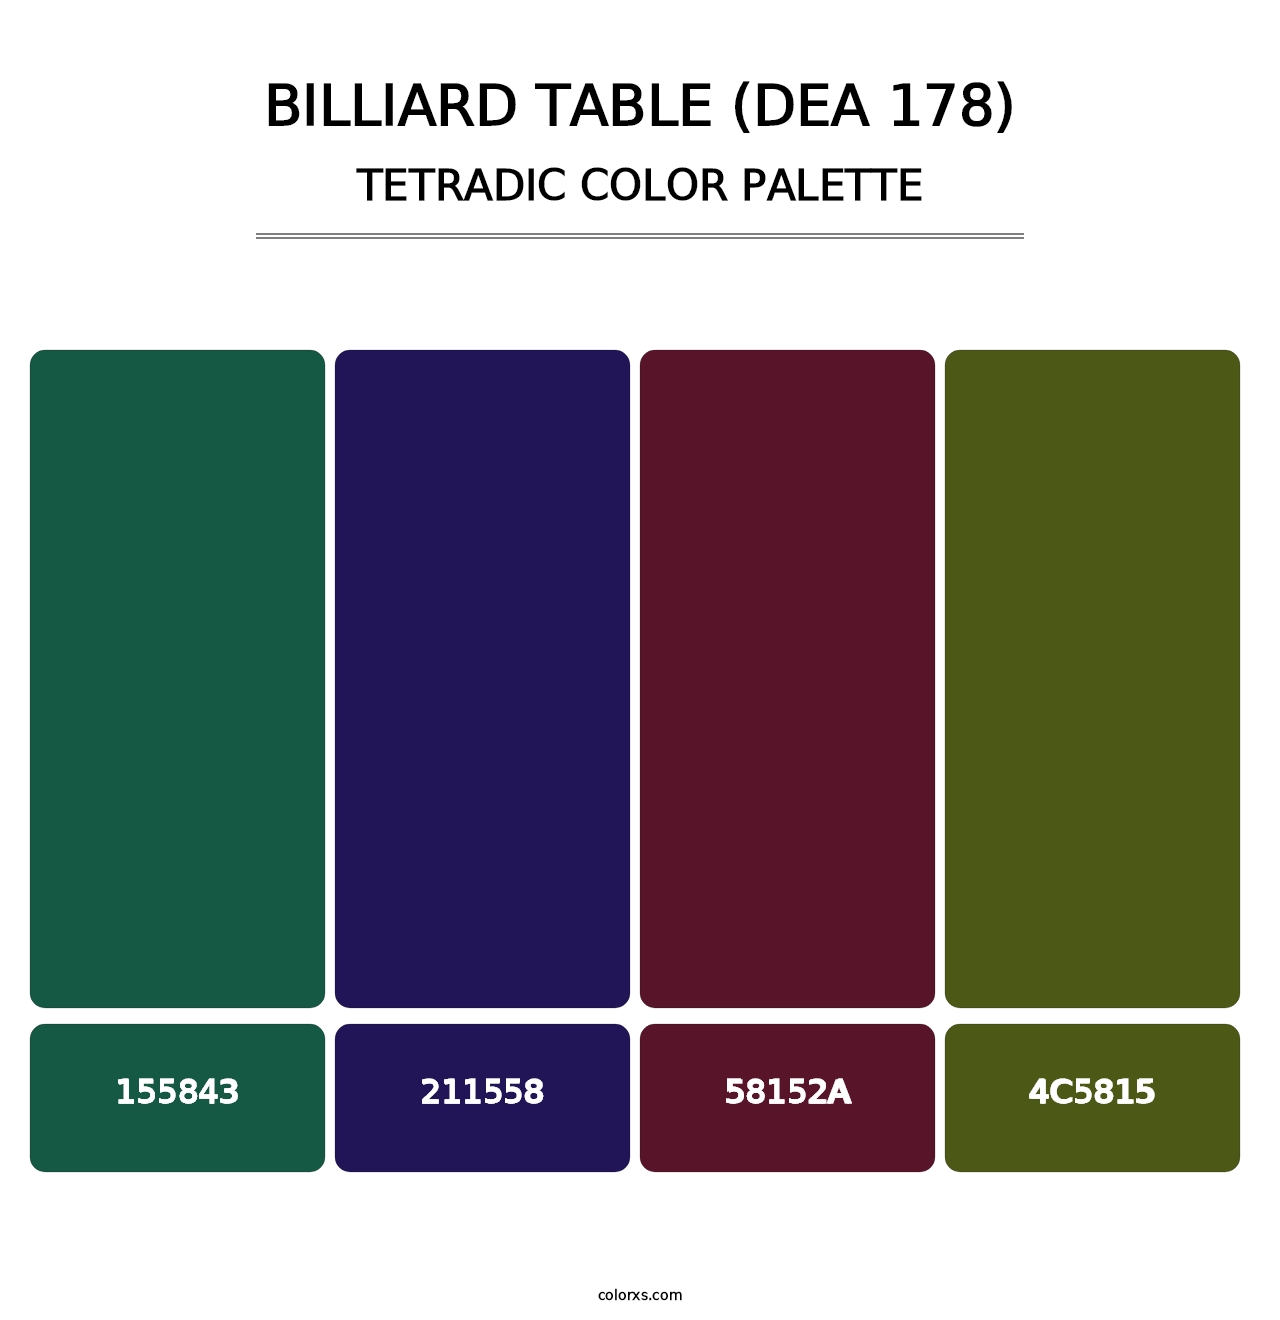 Billiard Table (DEA 178) - Tetradic Color Palette